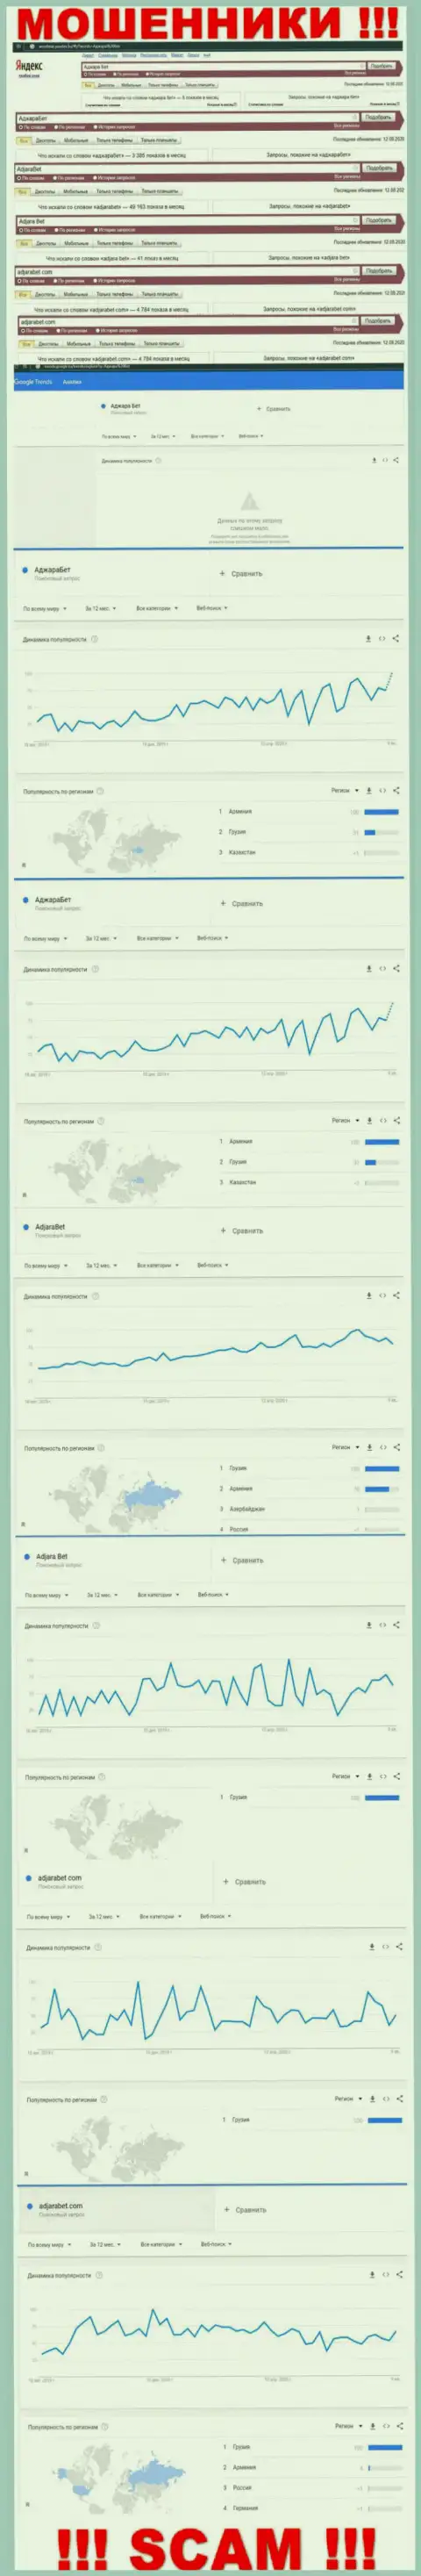 Статистические показатели количества онлайн-запросов во всемирной интернет паутине по кидалам АджараБет